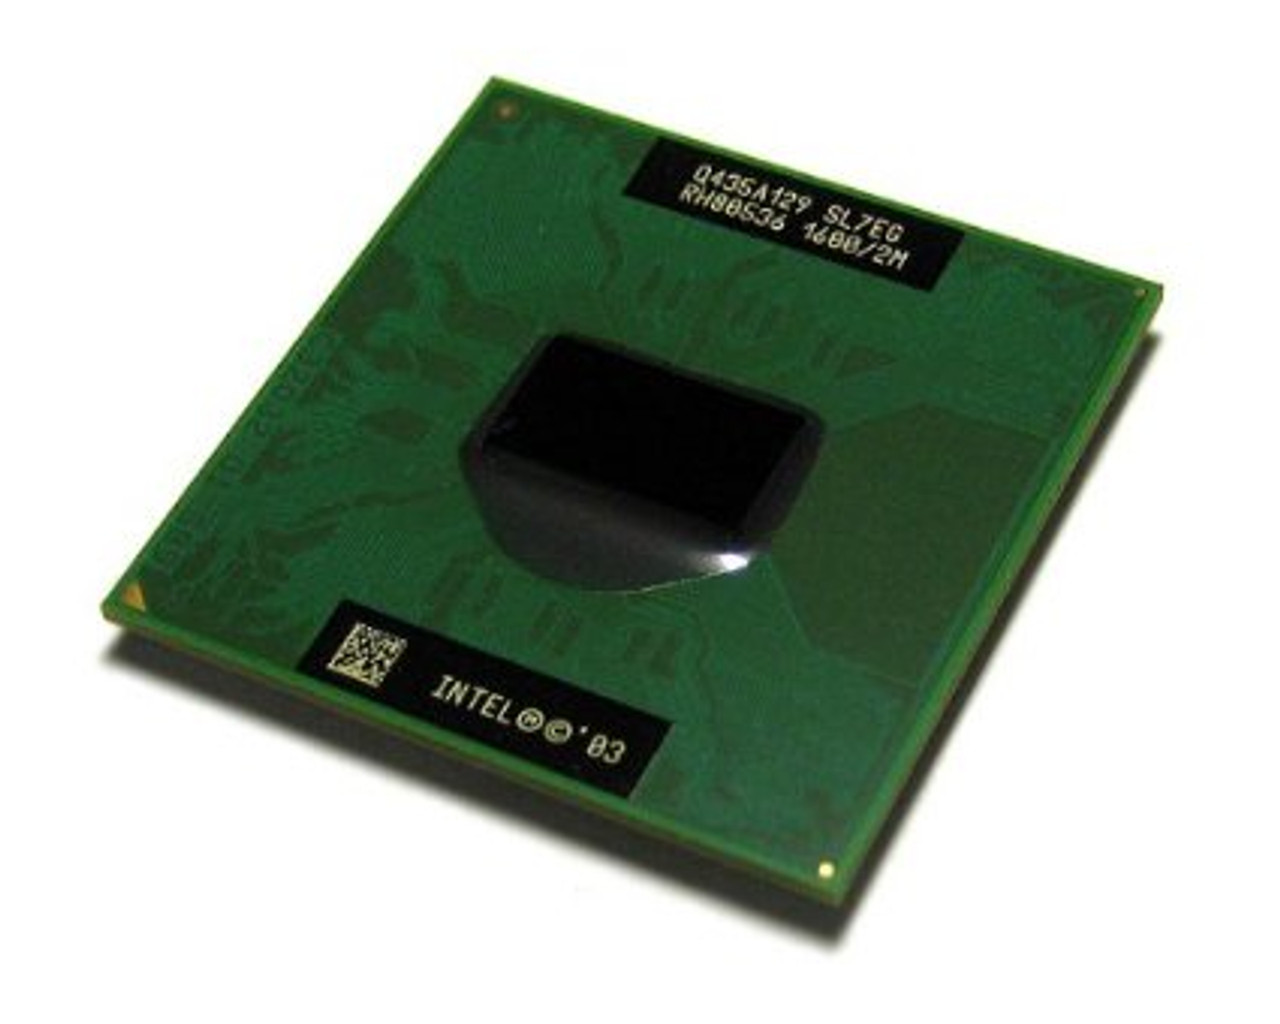 80524KX400256 - Intel Pentium II 400MHz 66MHz FSB 256KB L2 Cache Socket Mini-Cartridge Mobile Processor